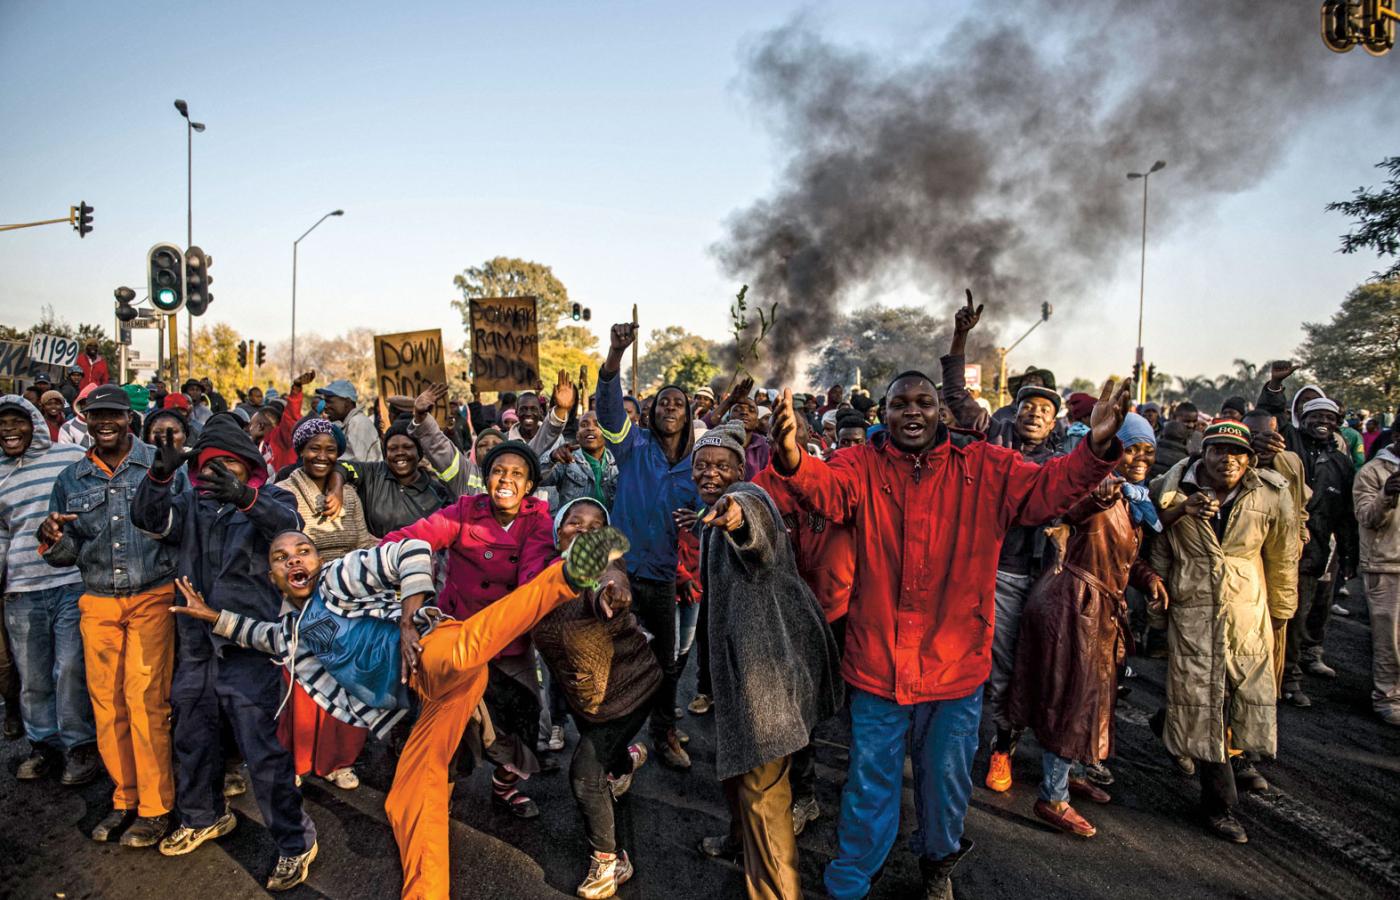 Mieszkańcy Tshwane w RPA zbudowali barykady i palili autobusy na ulicach miasta,
gdy Afrykański Kongres Narodowy ogłosił swojego kandydata na burmistrza.